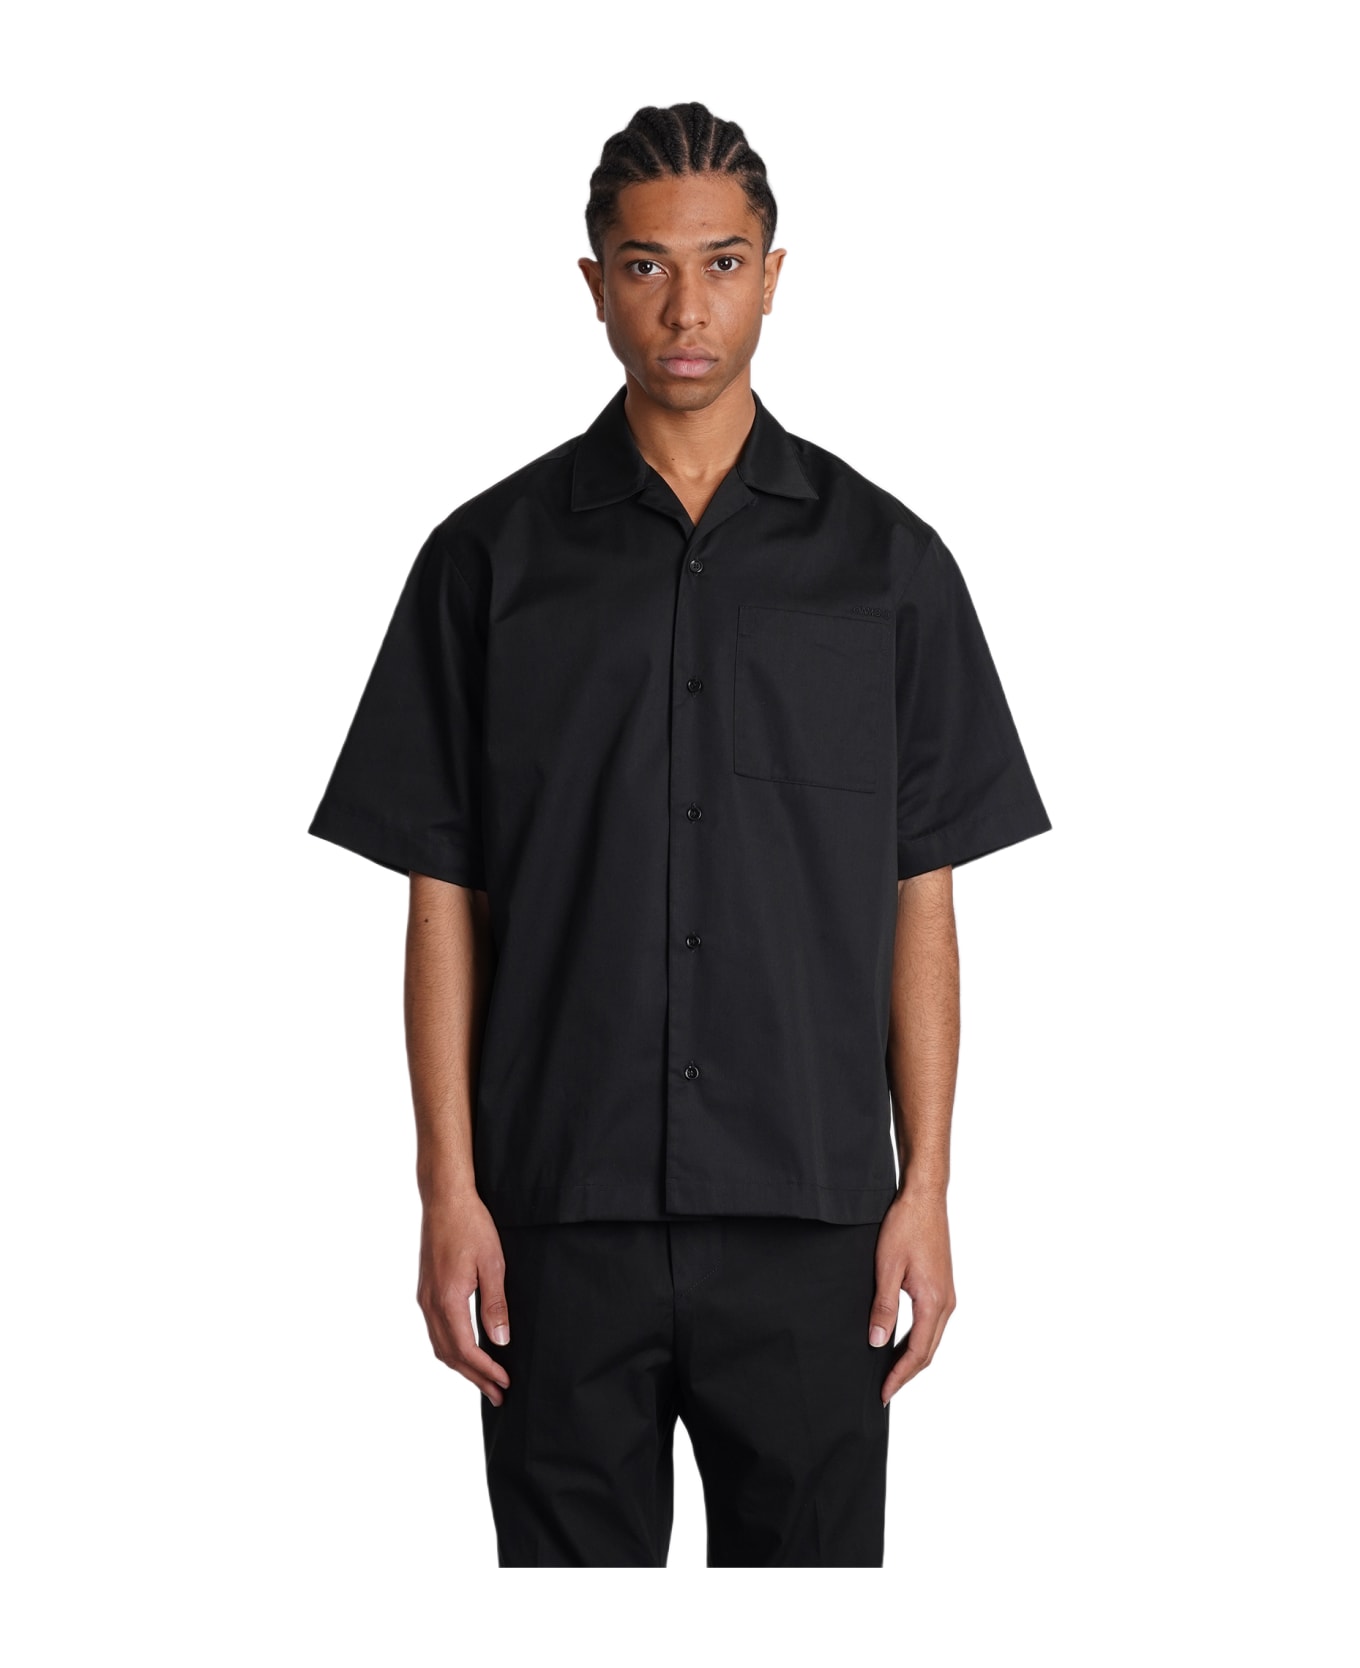 OAMC Shirt In Black Polyester - black シャツ